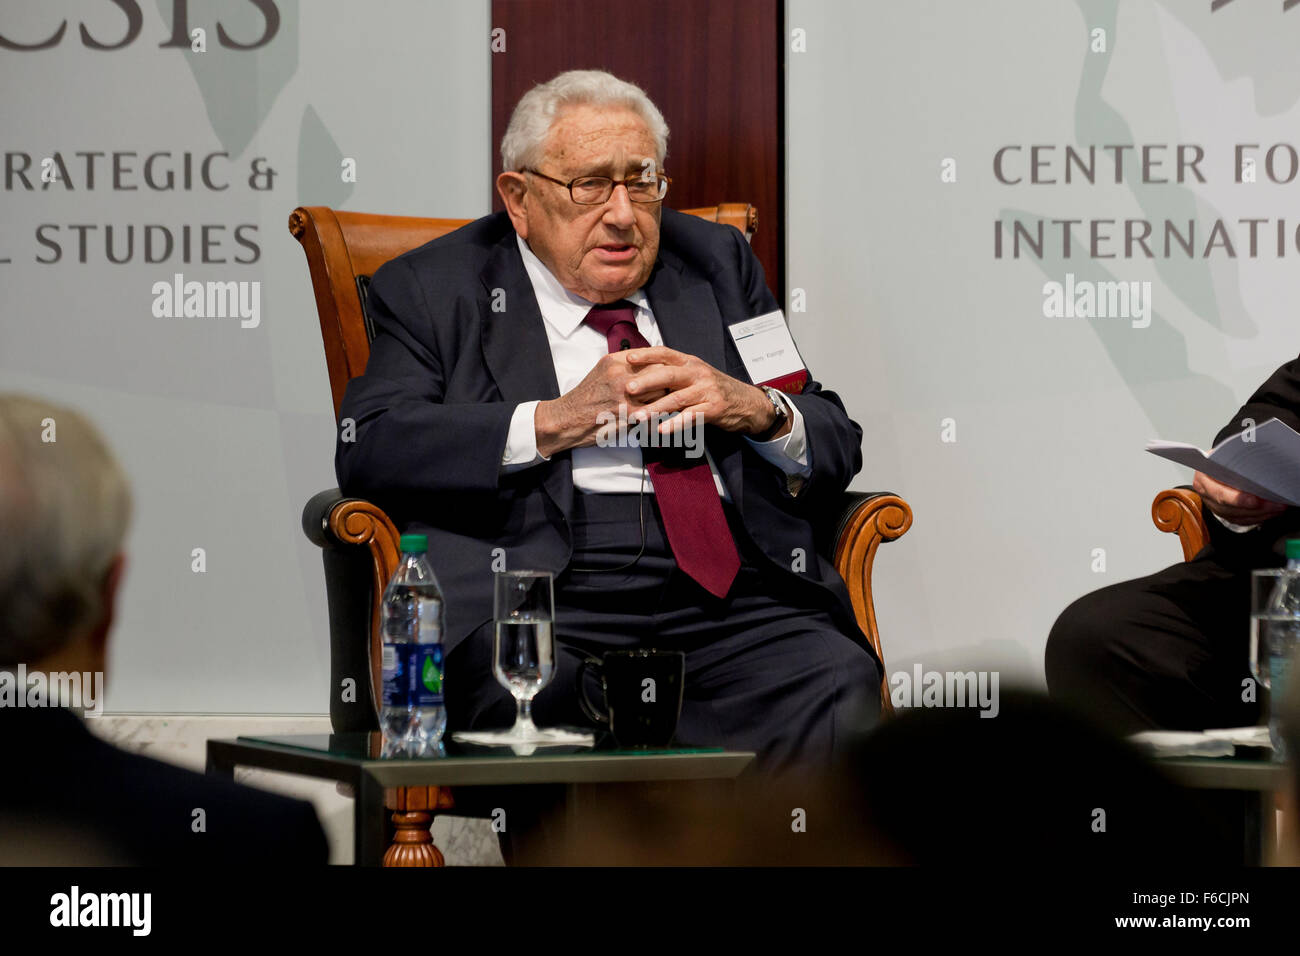 Washington DC, USA. 16. November 2015.  Henry Kissinger, ehemaliger Staatssekretär und nationaler Sicherheitsberater, spricht über Iran und dem Nahen Osten am Zentrum für strategische & International Studies (CSIS). Bildnachweis: B Christopher/Alamy Live-Nachrichten Stockfoto